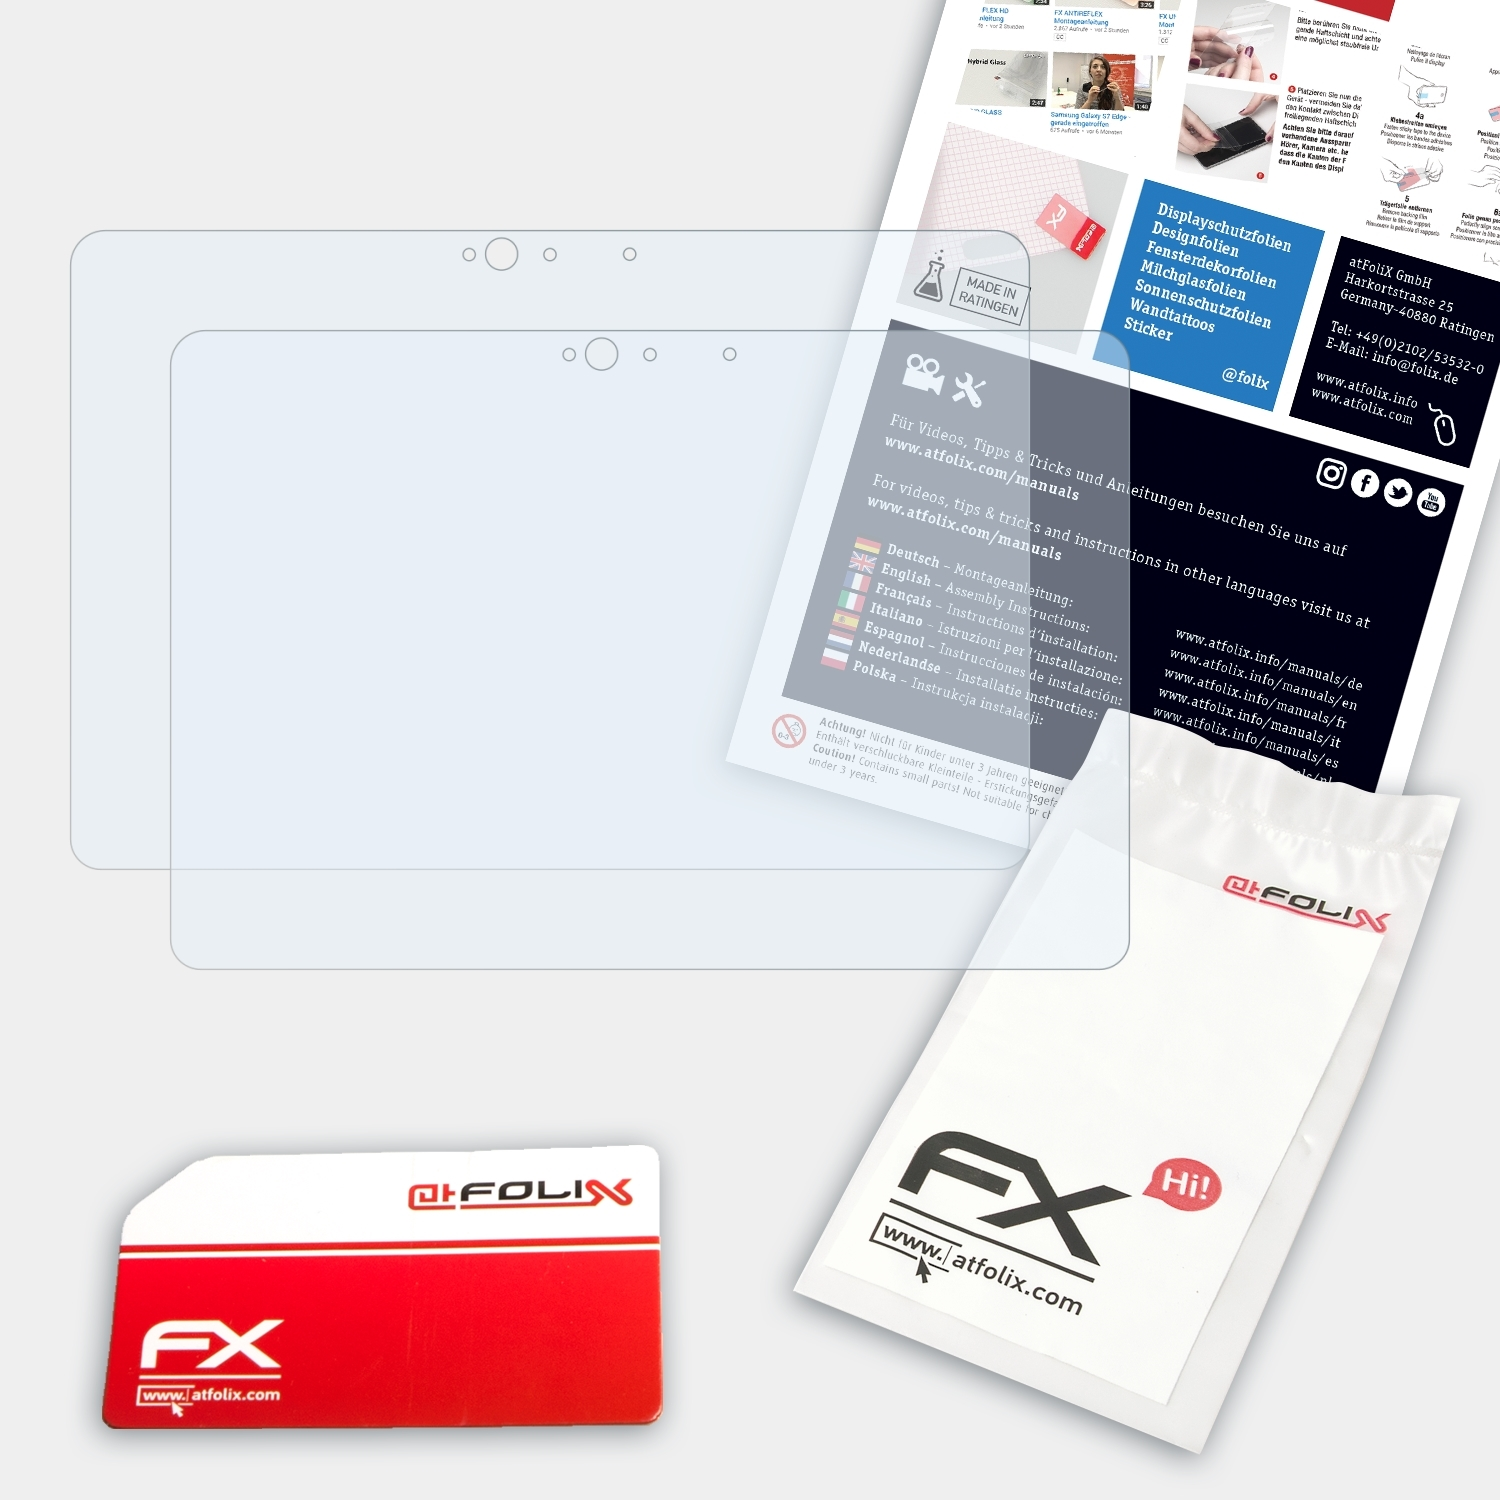 ATFOLIX 2x FX-Clear Chromebook Displayschutz(für C302CA (ASUS)) Google Flip